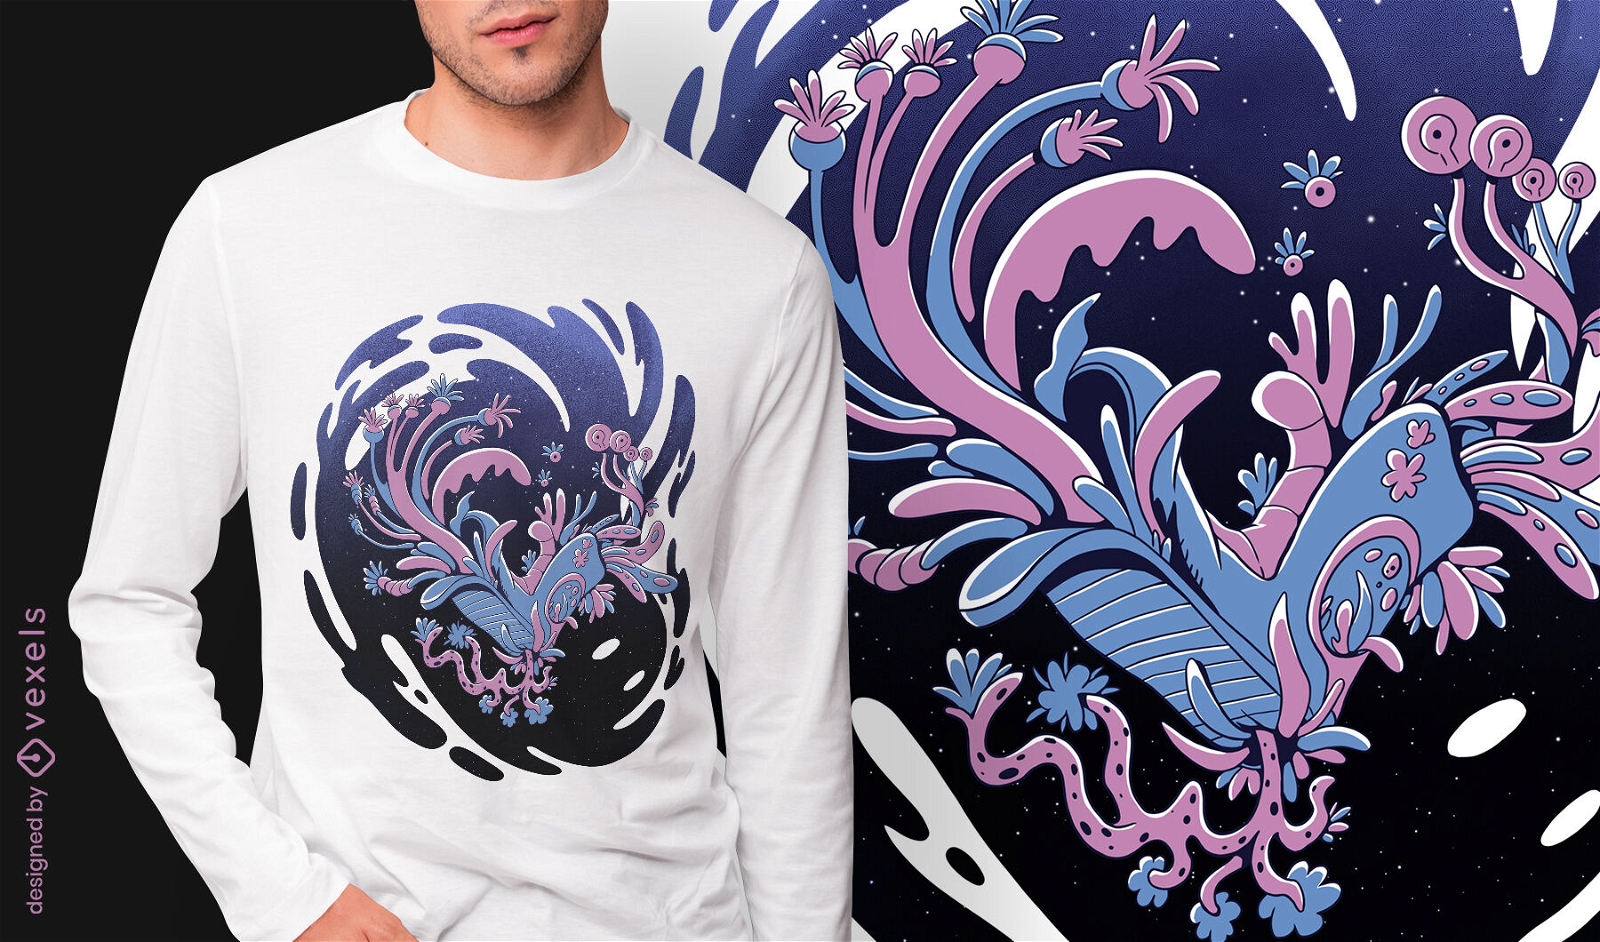 Diseño de camiseta psd de monstruo espacial floral de arranque